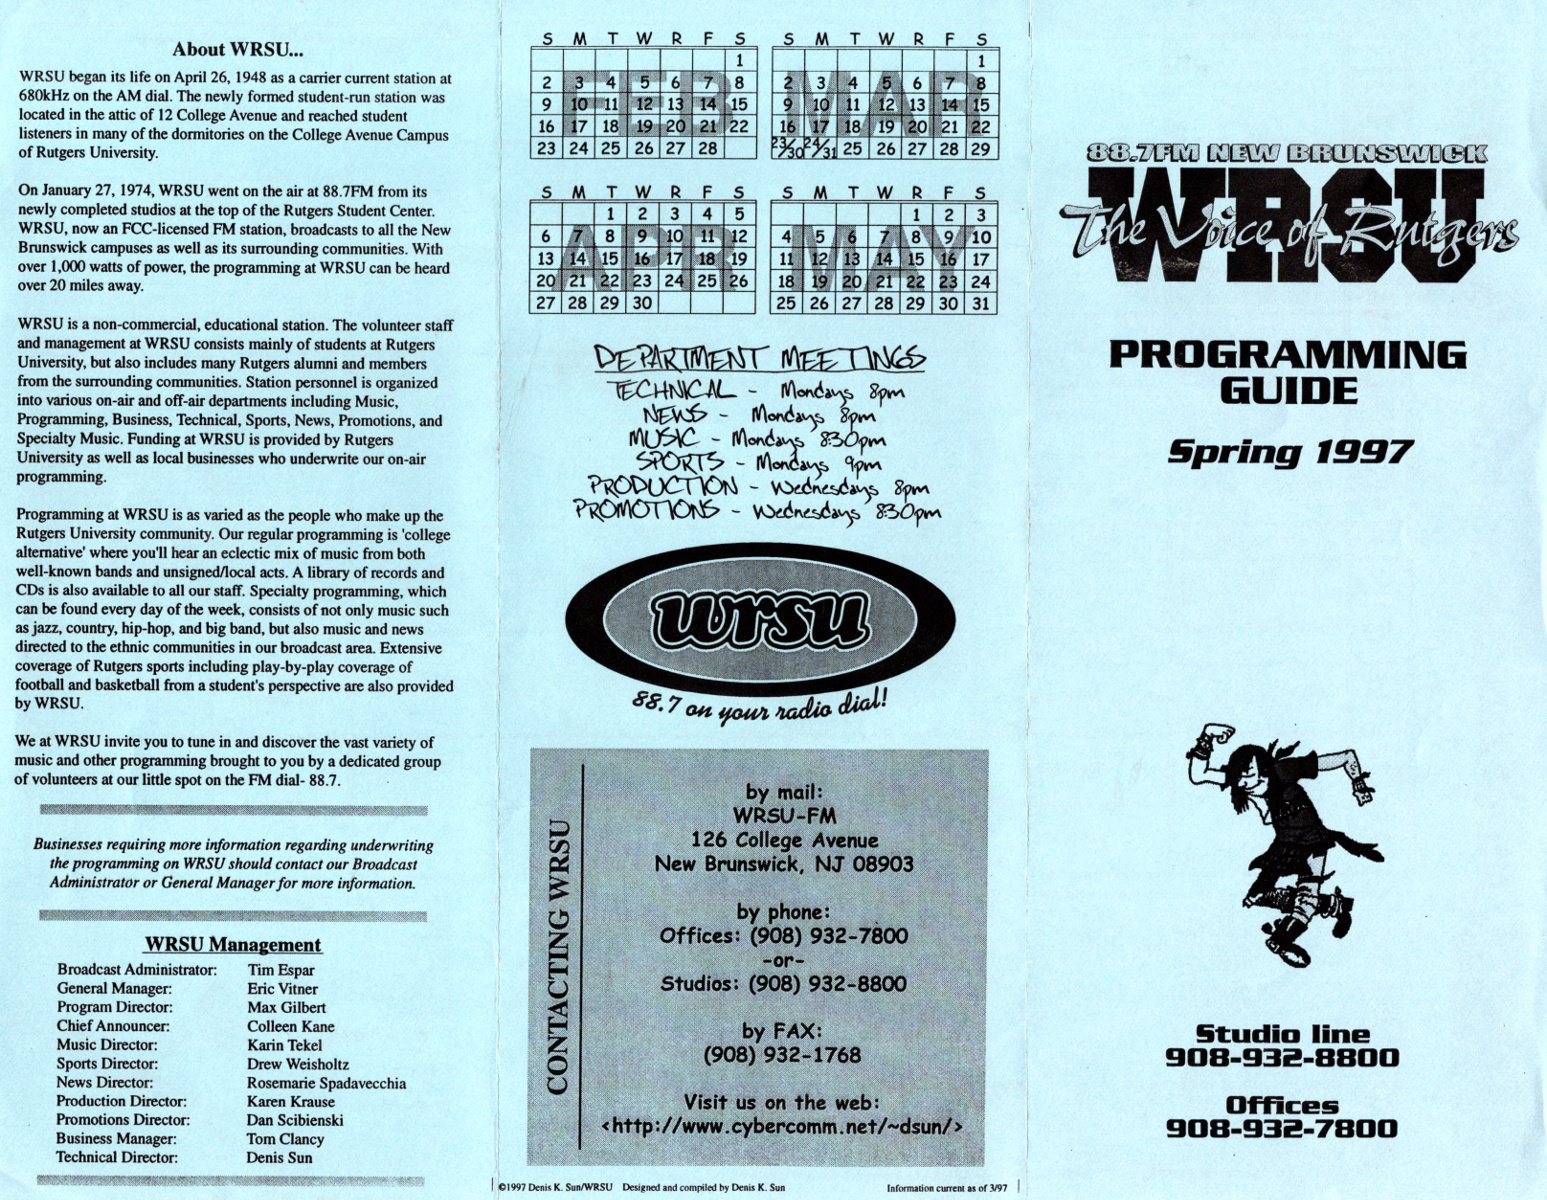 1997 Program Guide